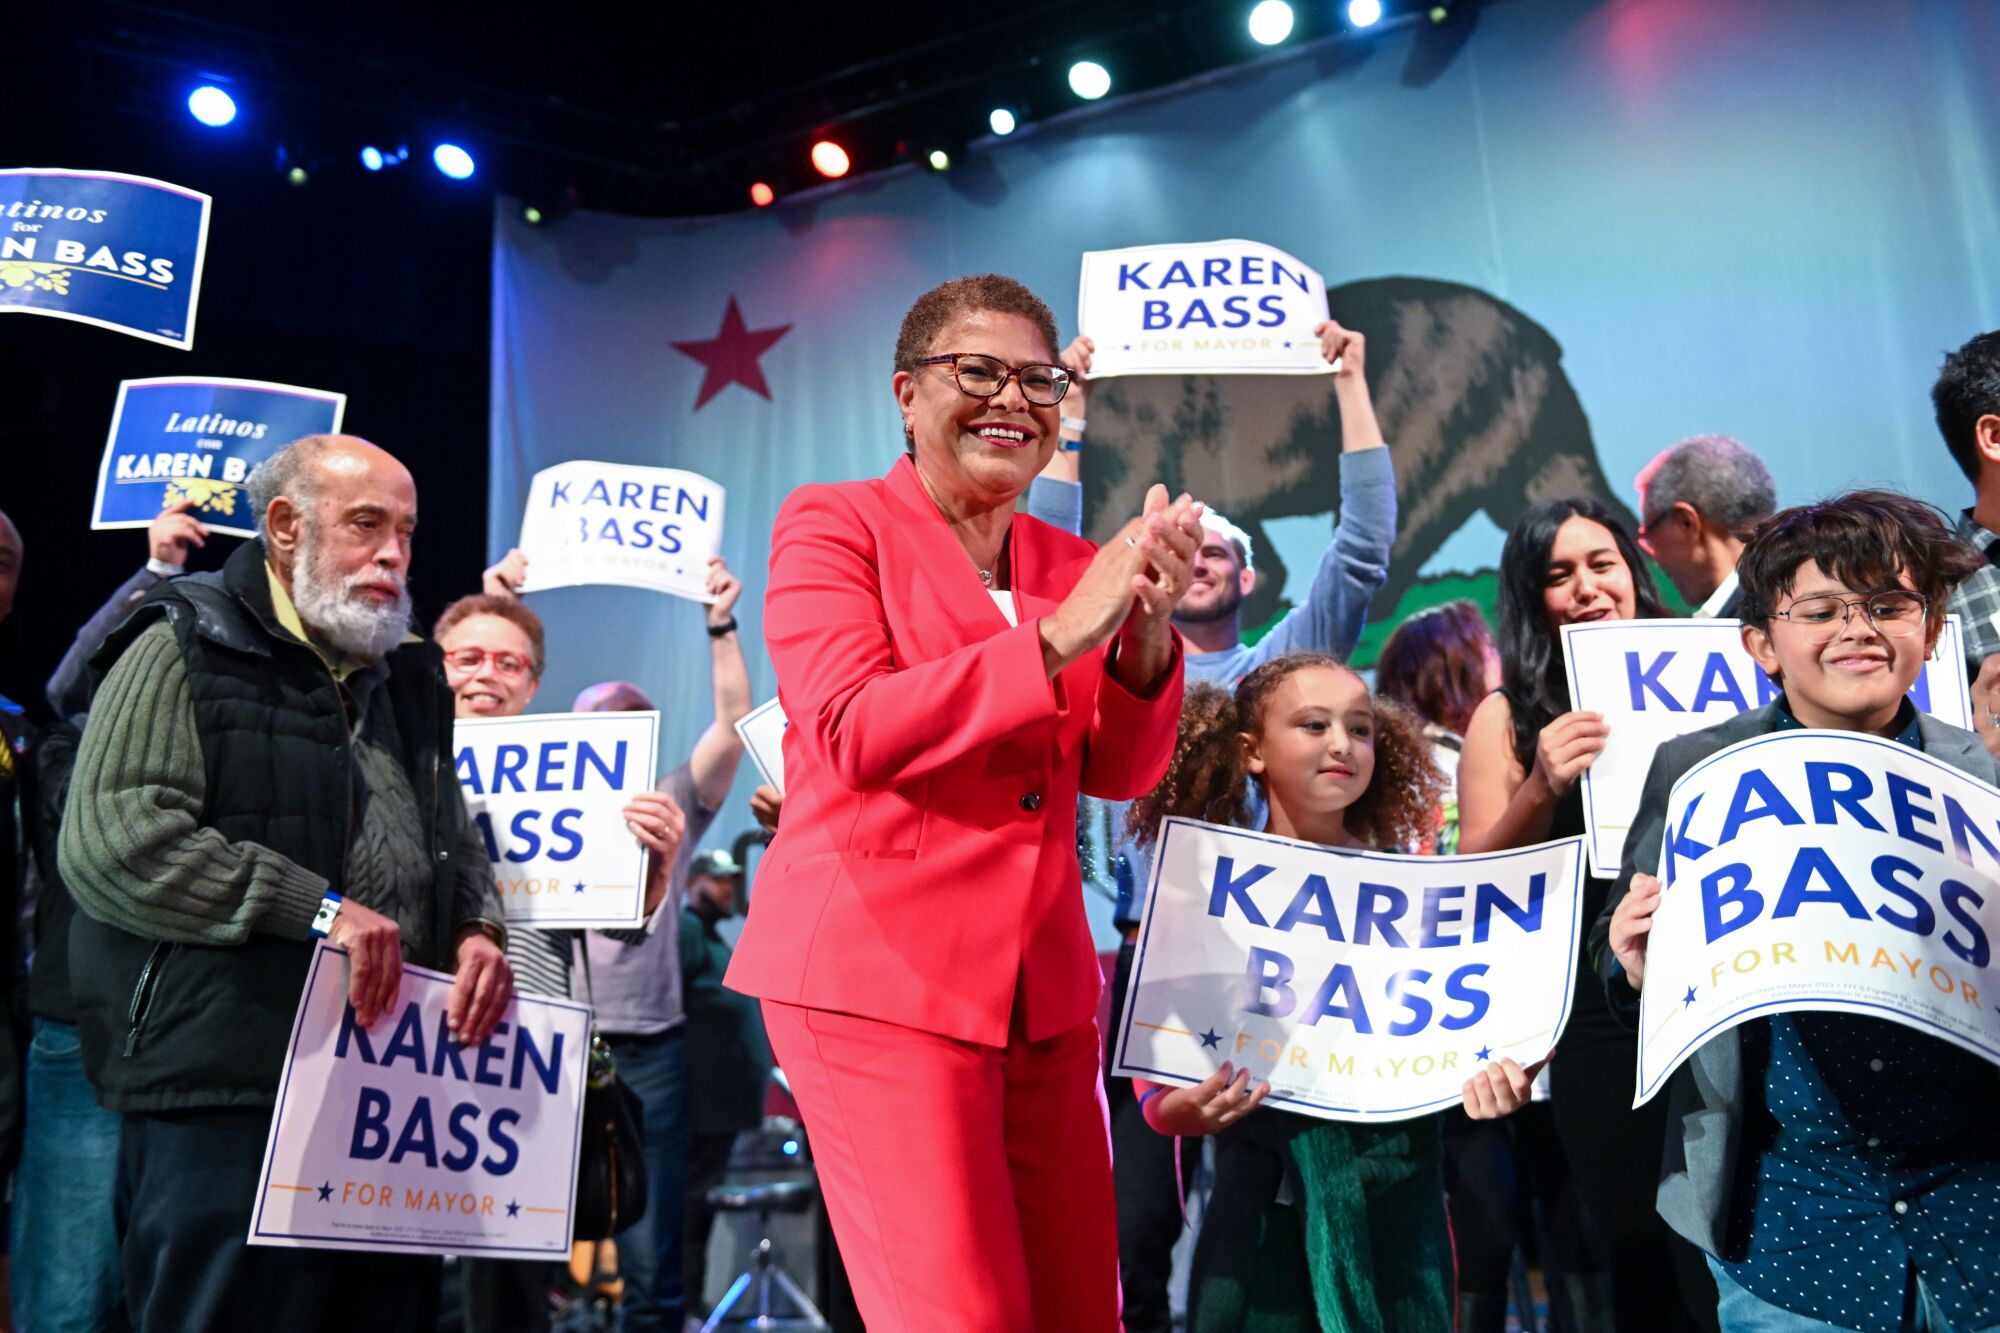 Rep. Karen Bass berbicara selama rapat umum malam pemilihan di Los Angeles.